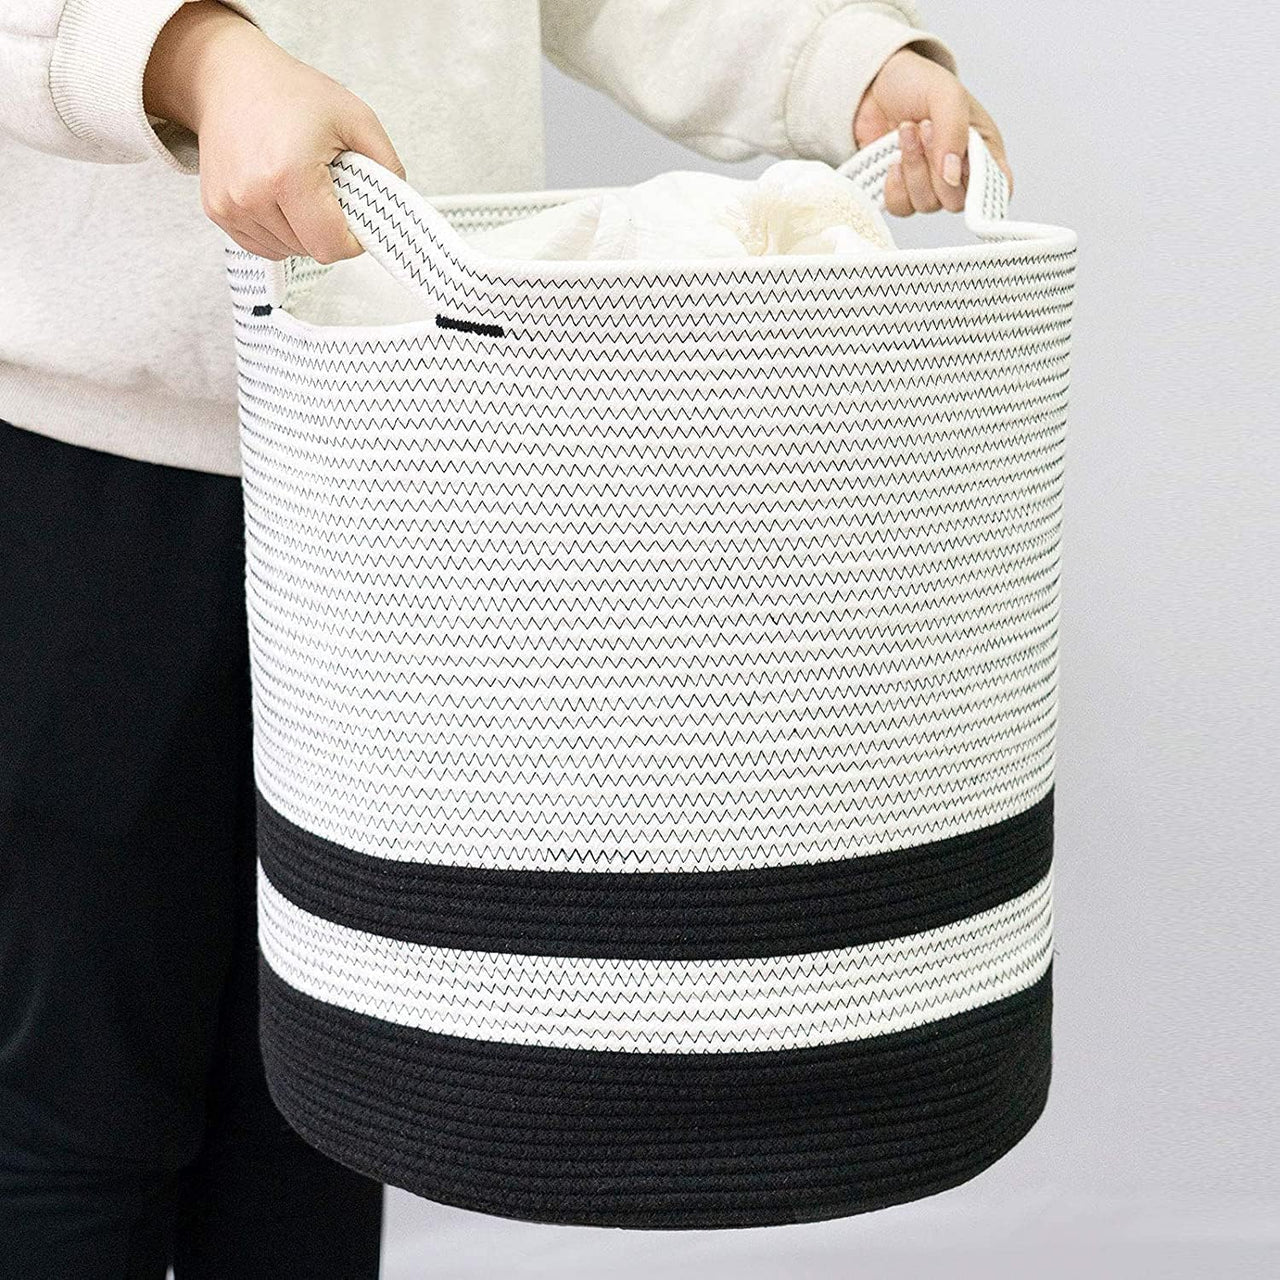 Foldable Wardrobe Cotton Mini Rope Laundry Basket